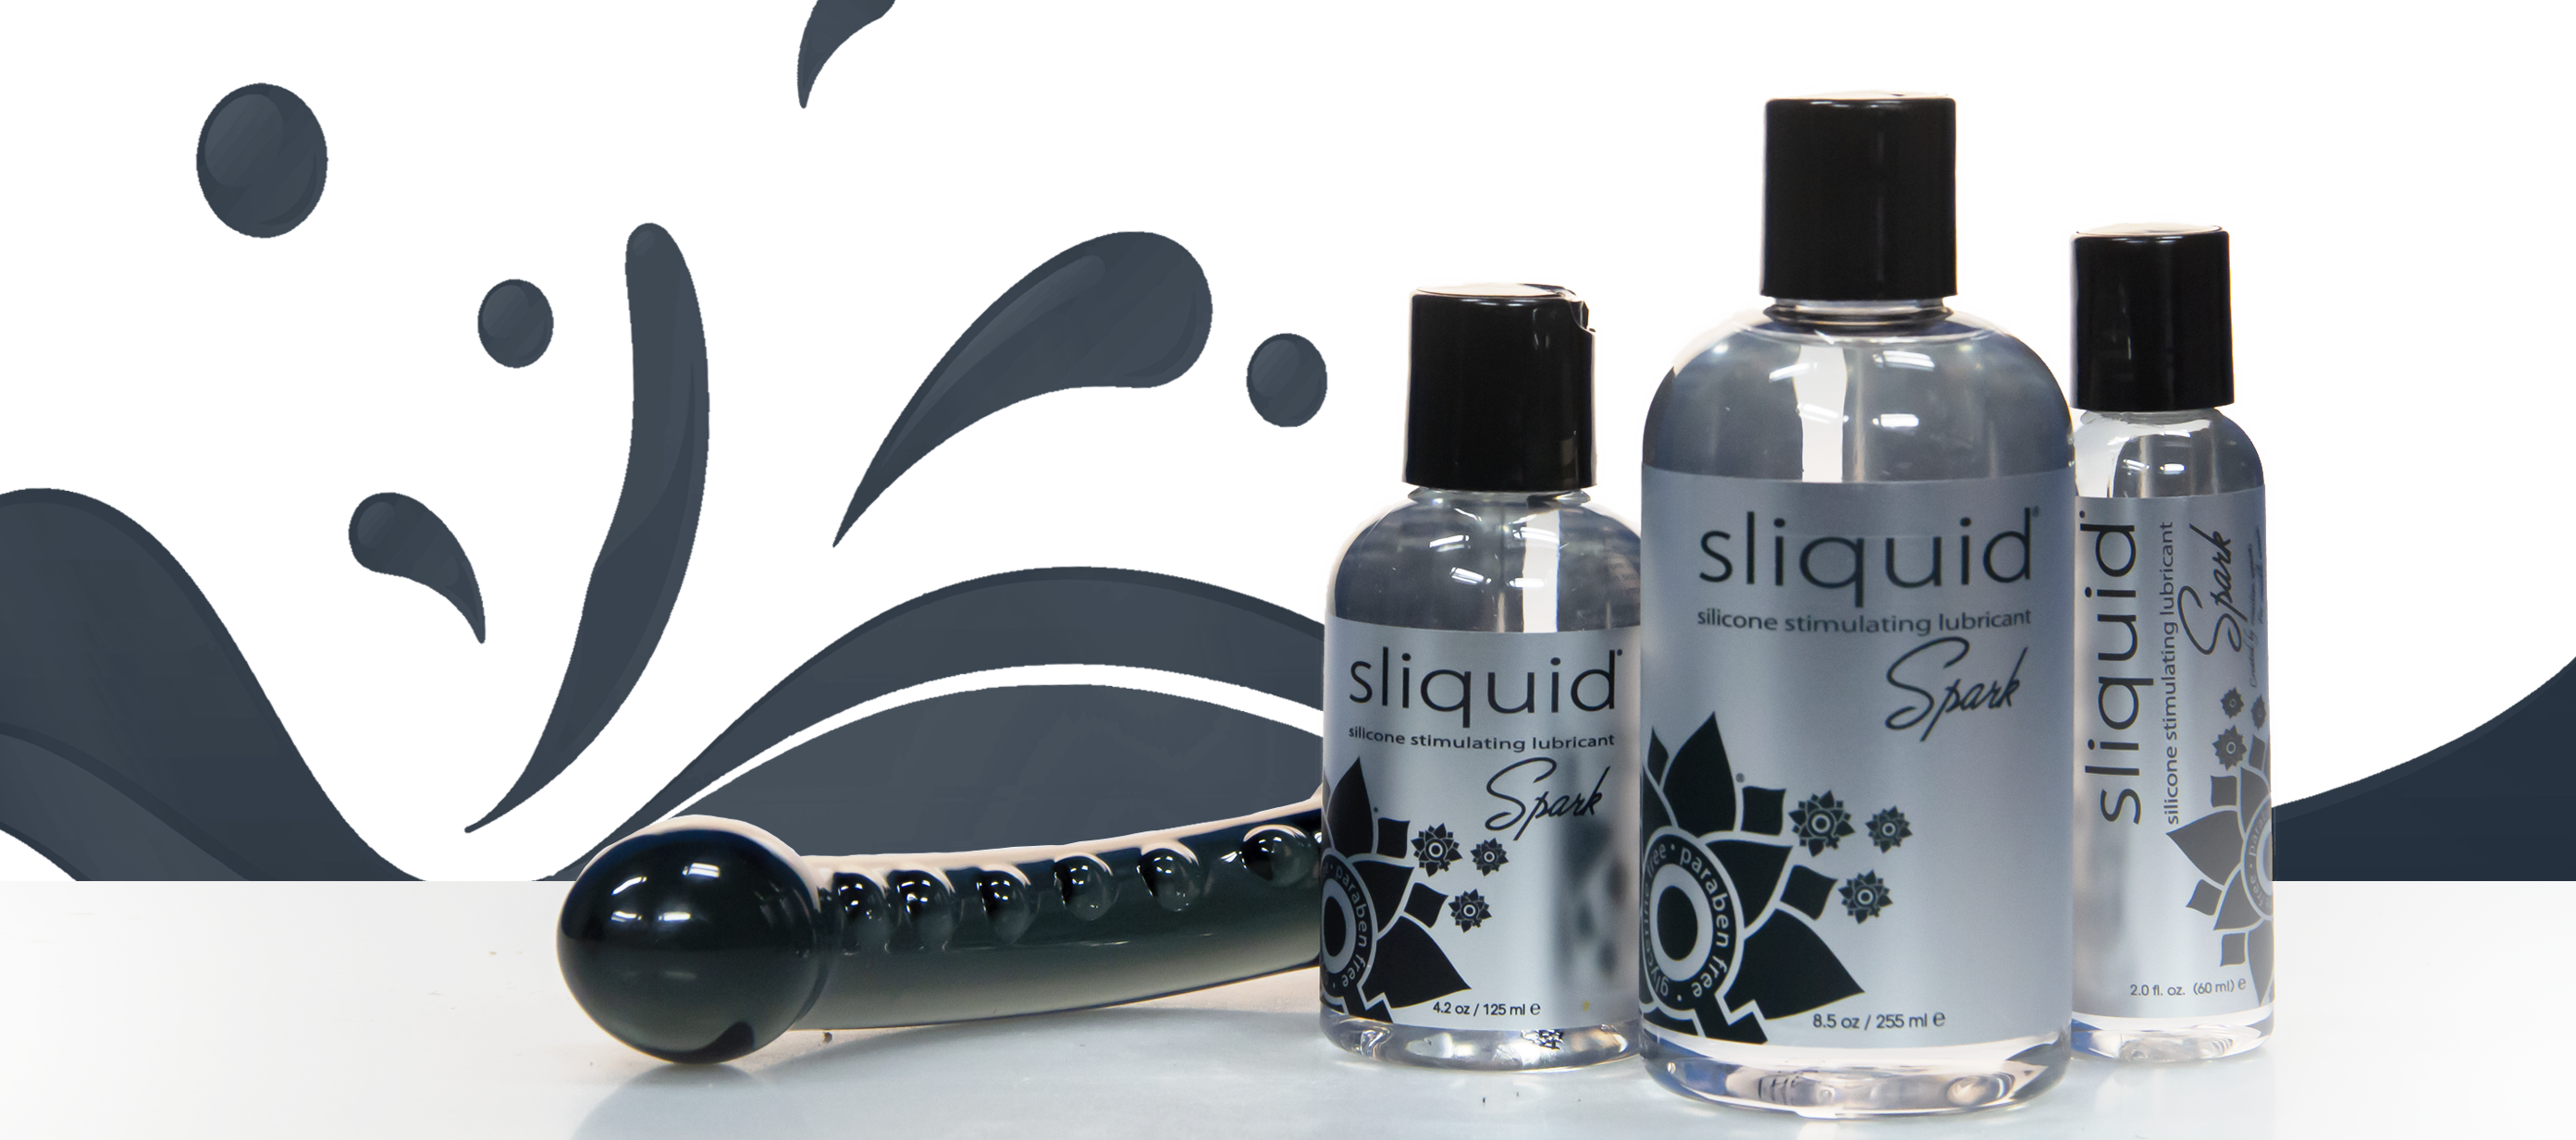 Sliquid Spark silicone stimulating lubricant